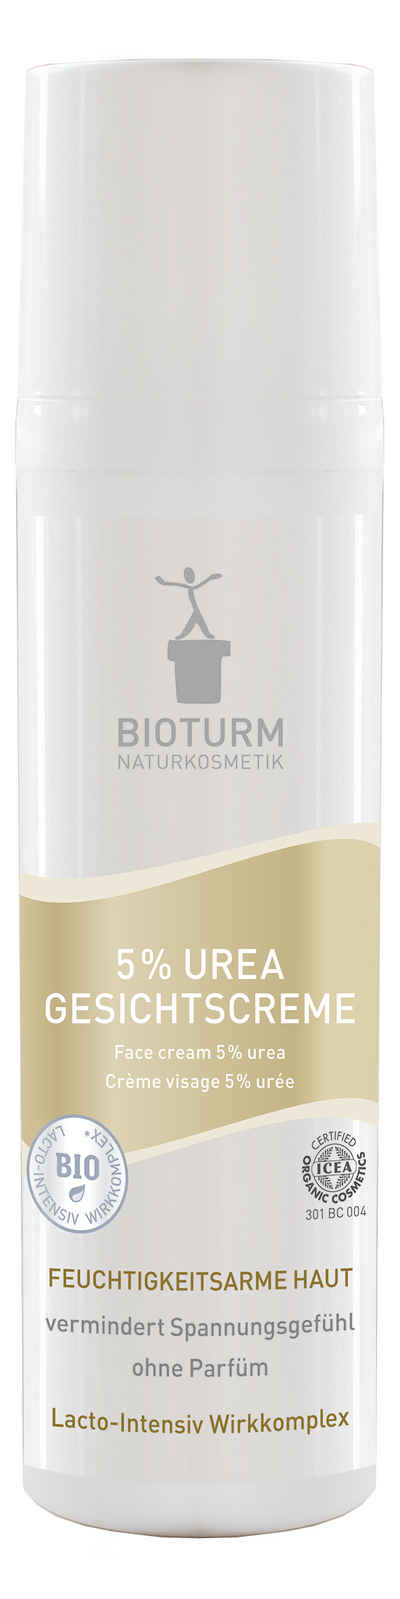 Bioturm Feuchtigkeitscreme Bioturm Naturkosmetik 5% Urea Gesichtscreme 75 ml